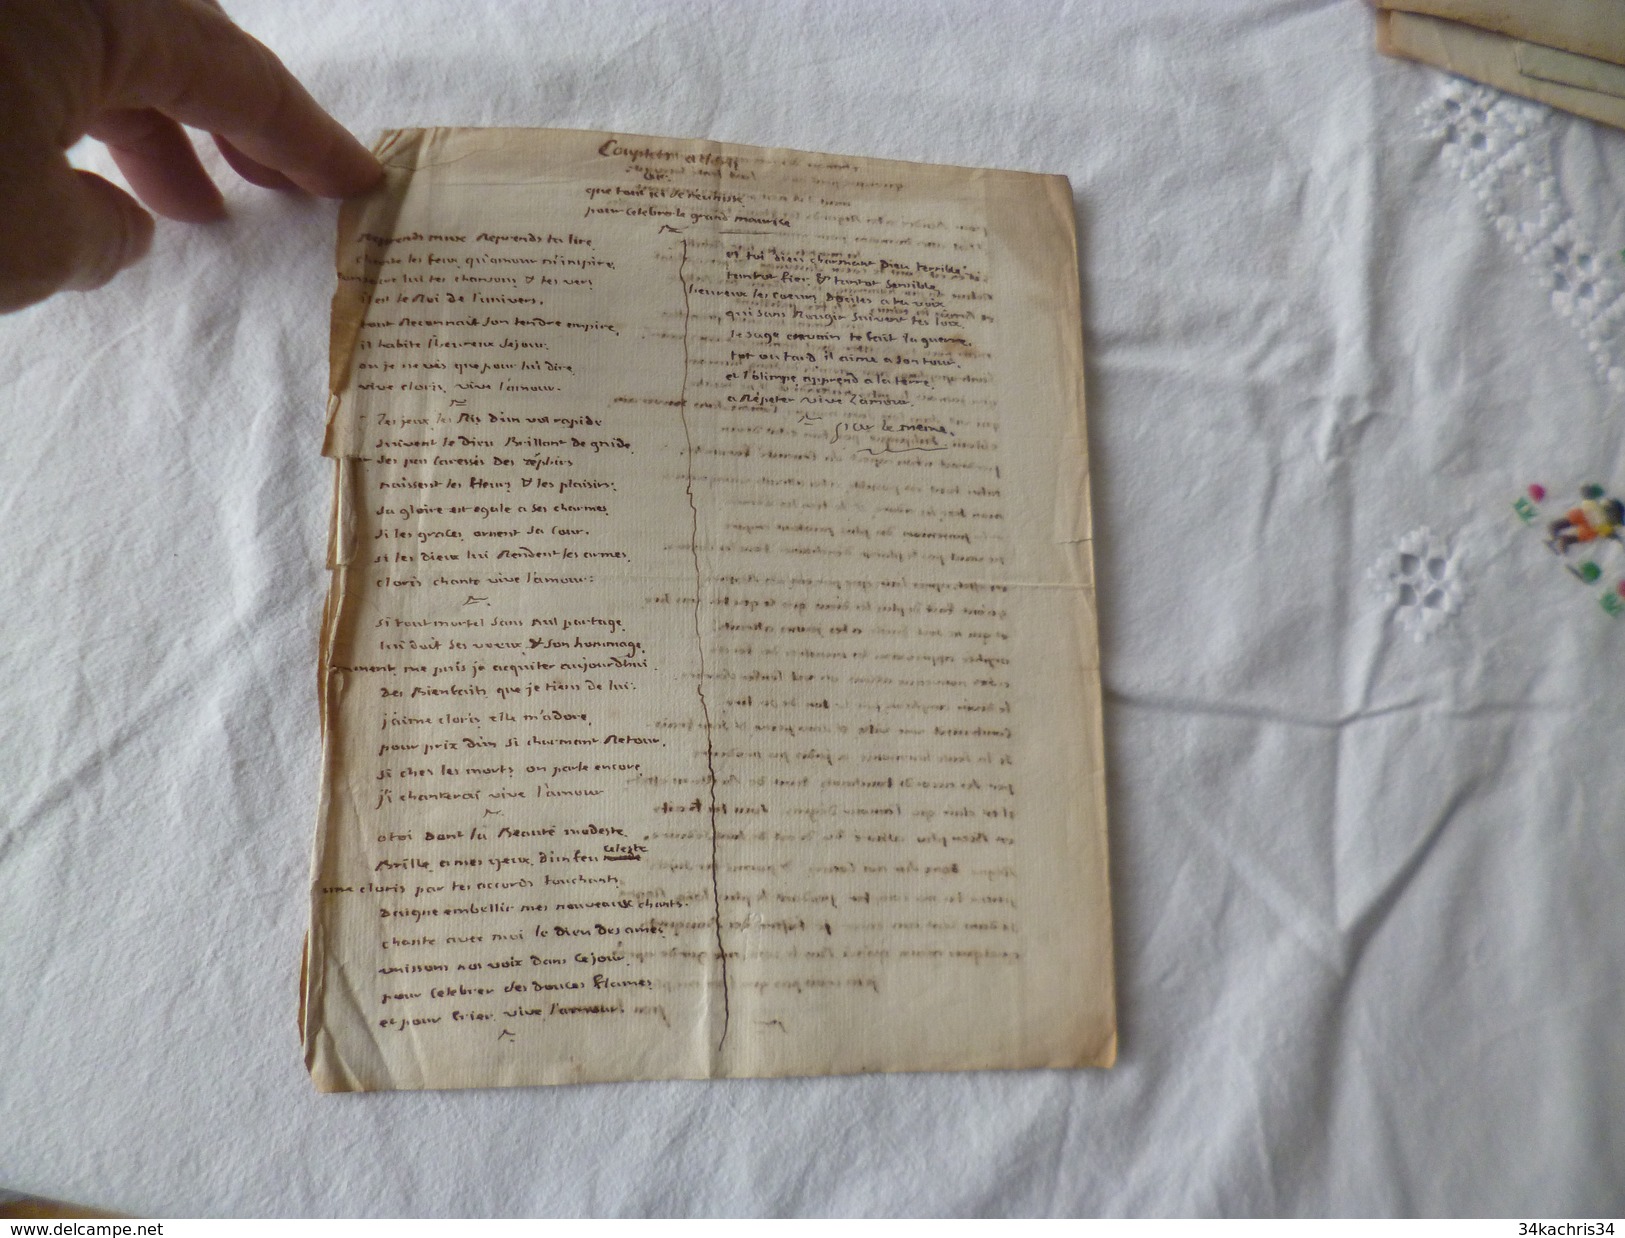 Chanson Poésie Manuscrit Vers Adressés à Mme La Duchesse Baronne De Latour Vœux Fin 18ème Surement - Manuscripts